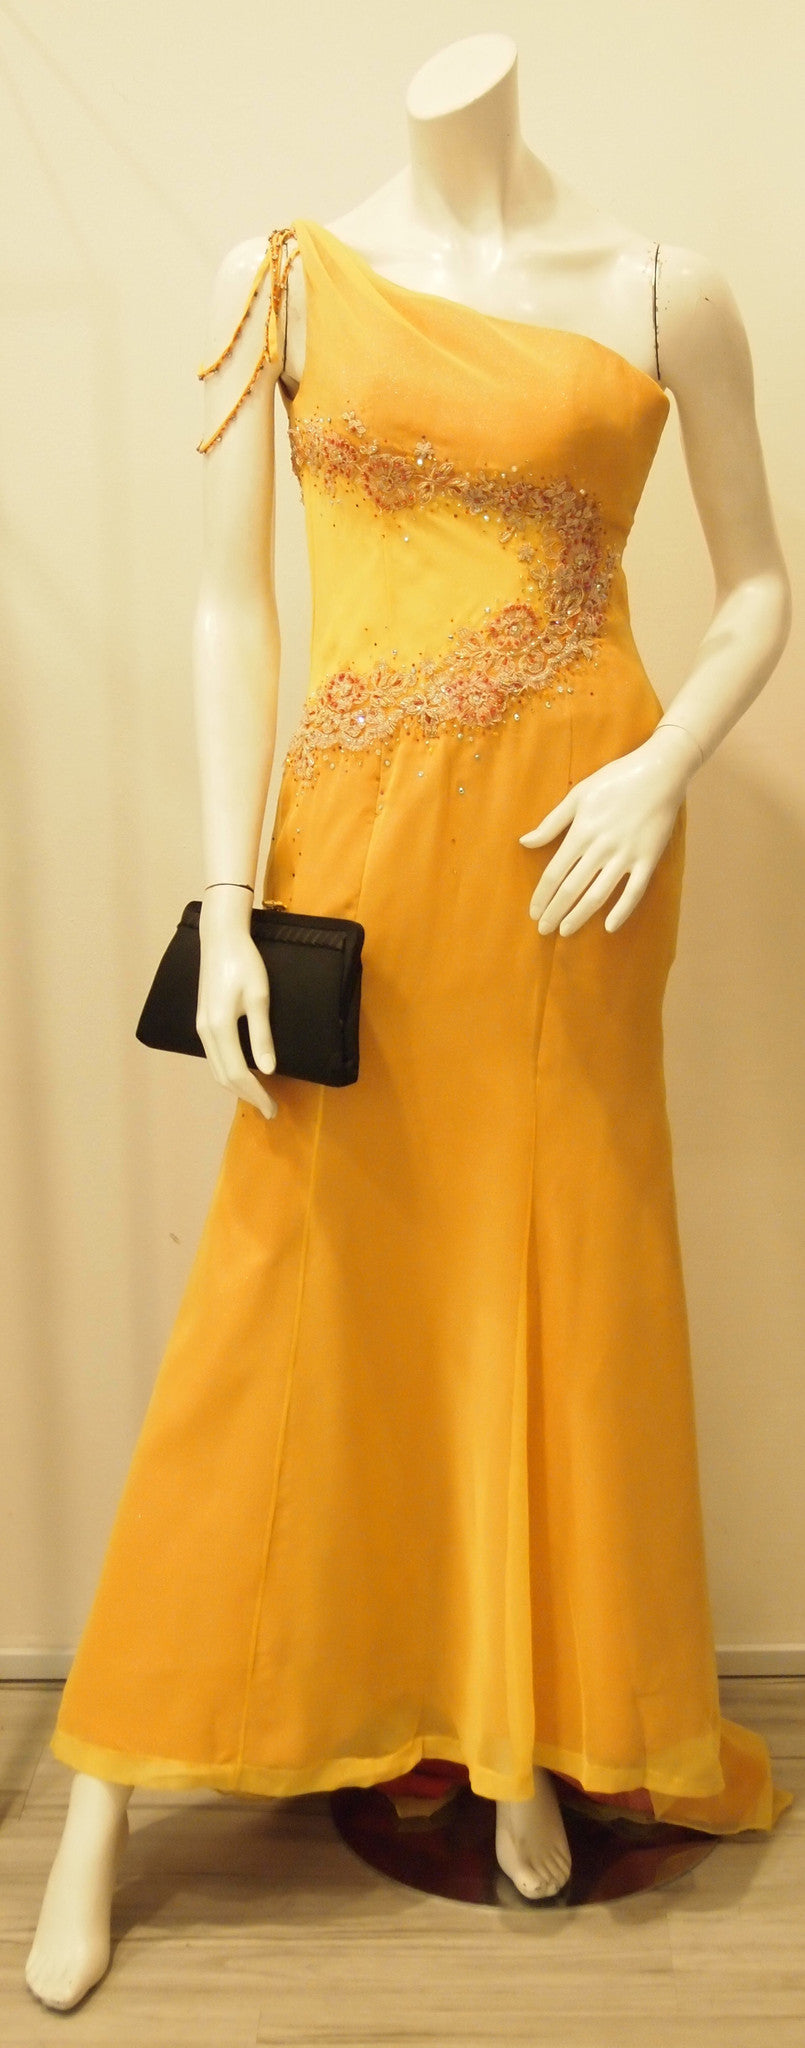 Scarlett O'hara Golden Vintage Evening Dress